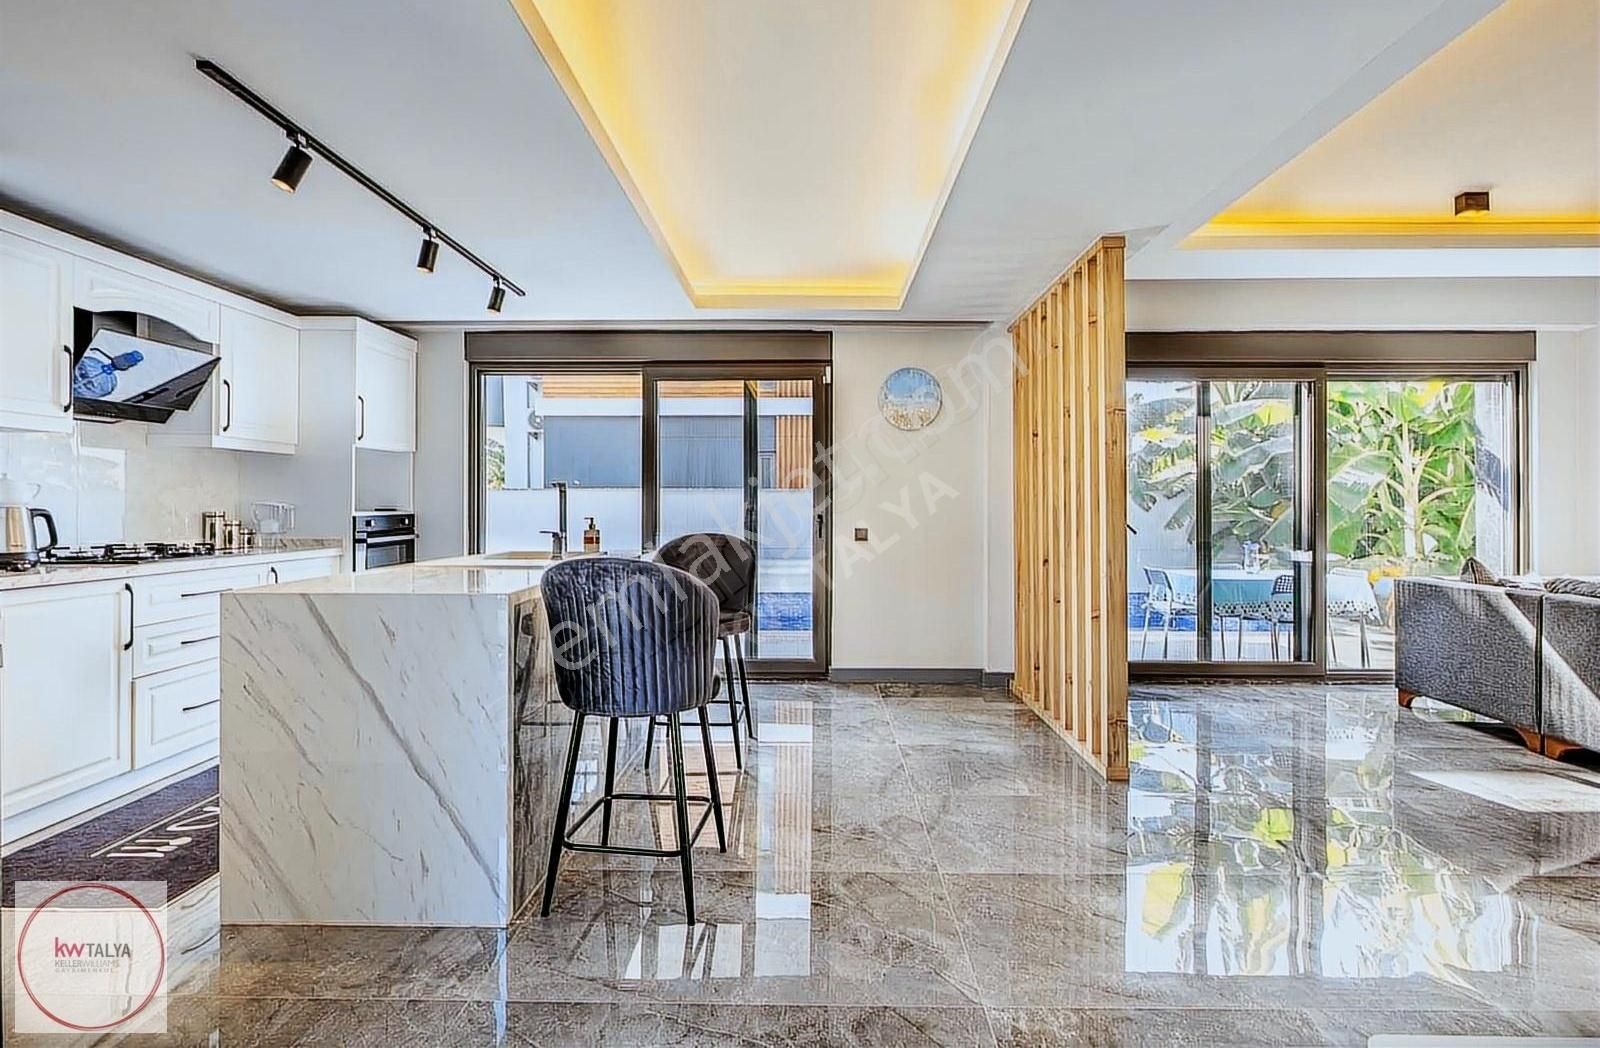 Serik Kadriye Satılık Villa ANTALYA BELEK KADRİYE'DE SATILIK 3+1 LÜKS MÜSTAKİL VİLLA